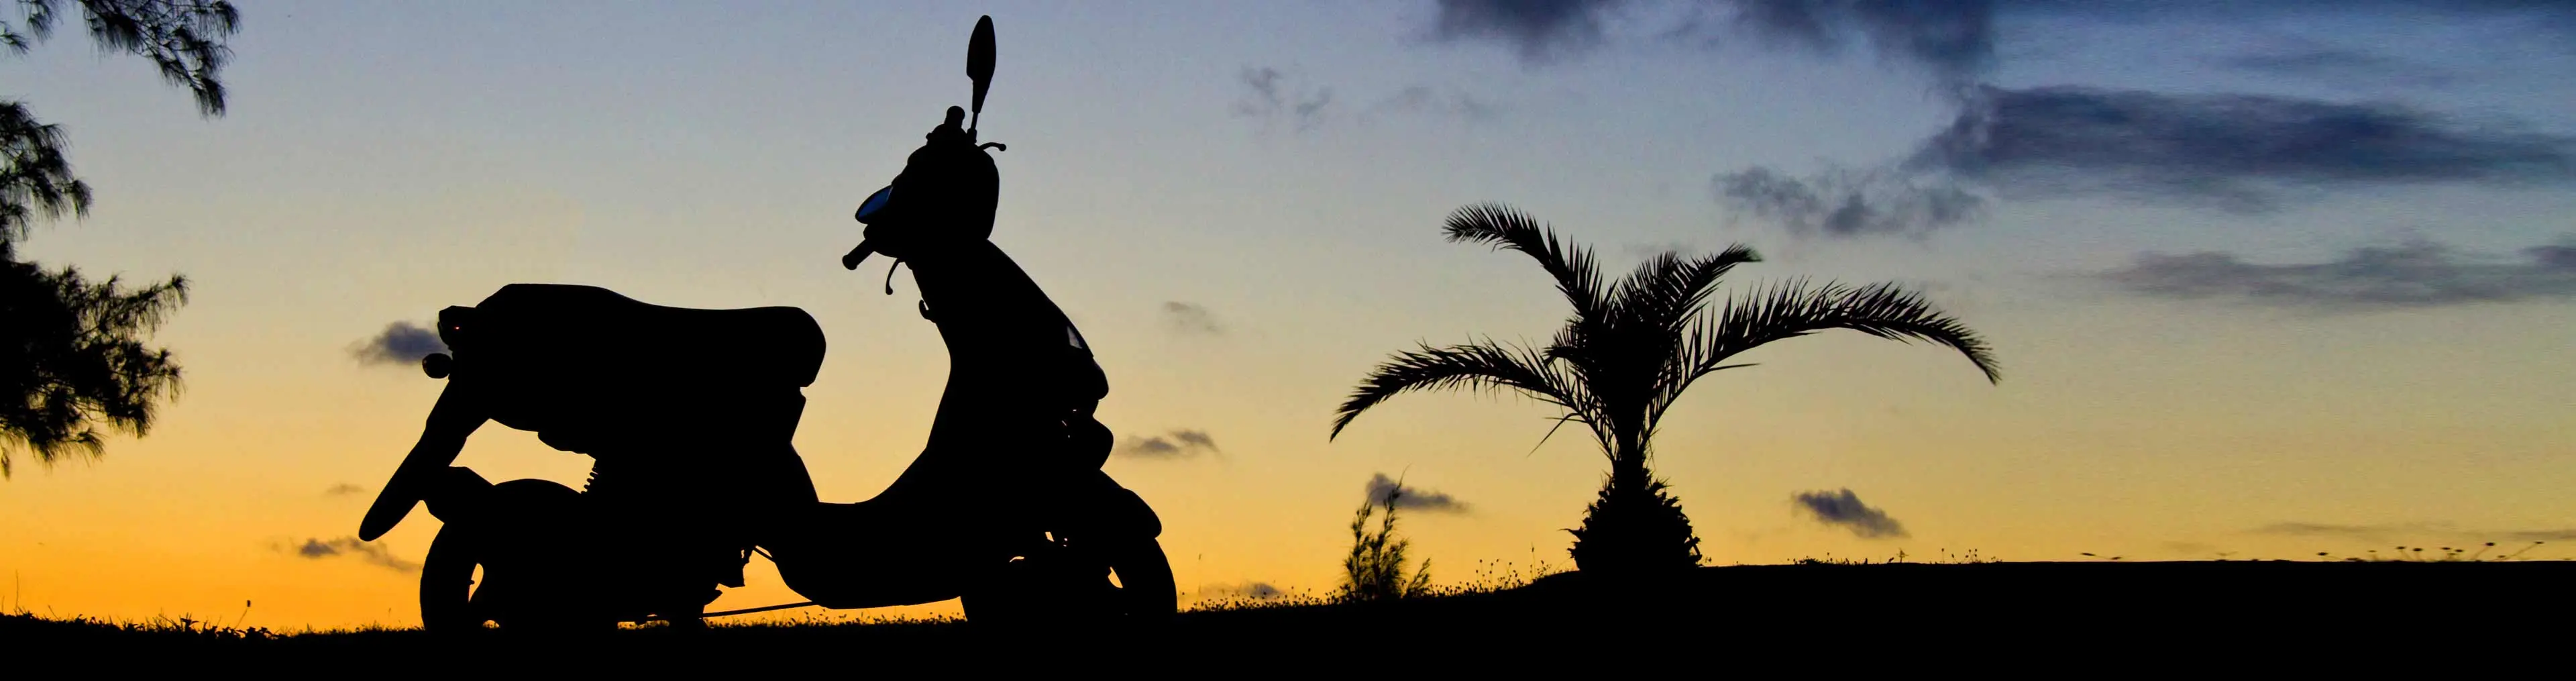 scooter parada ao pôr do sol